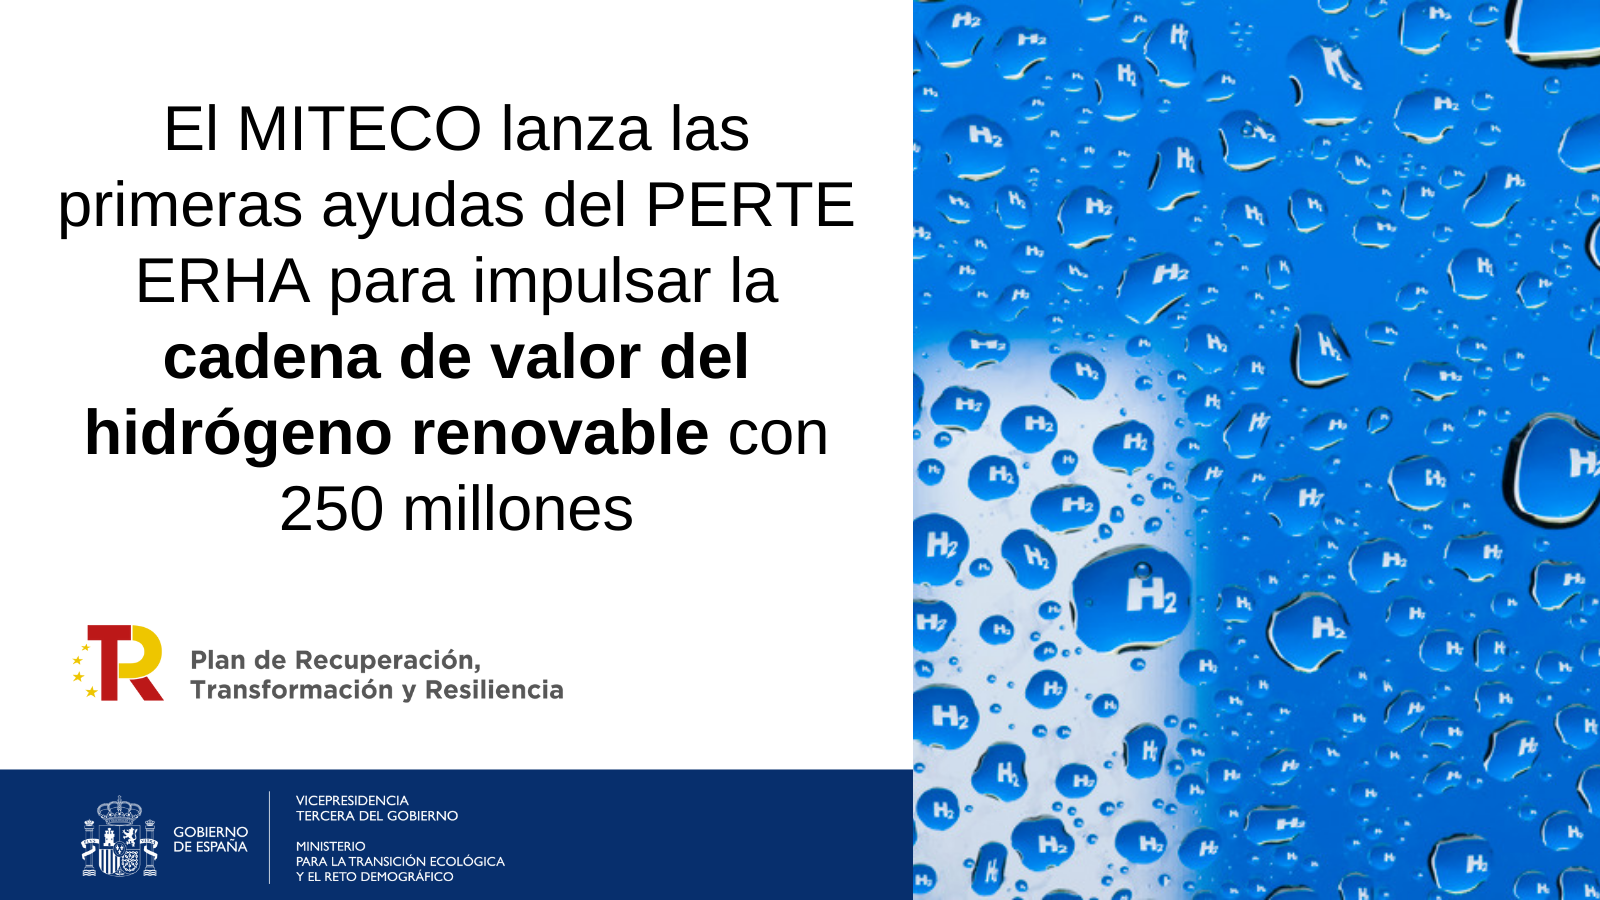 PERTE EHRA cadena valor hidrogenoEl MITECO lanza las primeras ayudas del PERTE ERHA para impulsar la cadena de valor del hidrógeno renovable con 250 millones